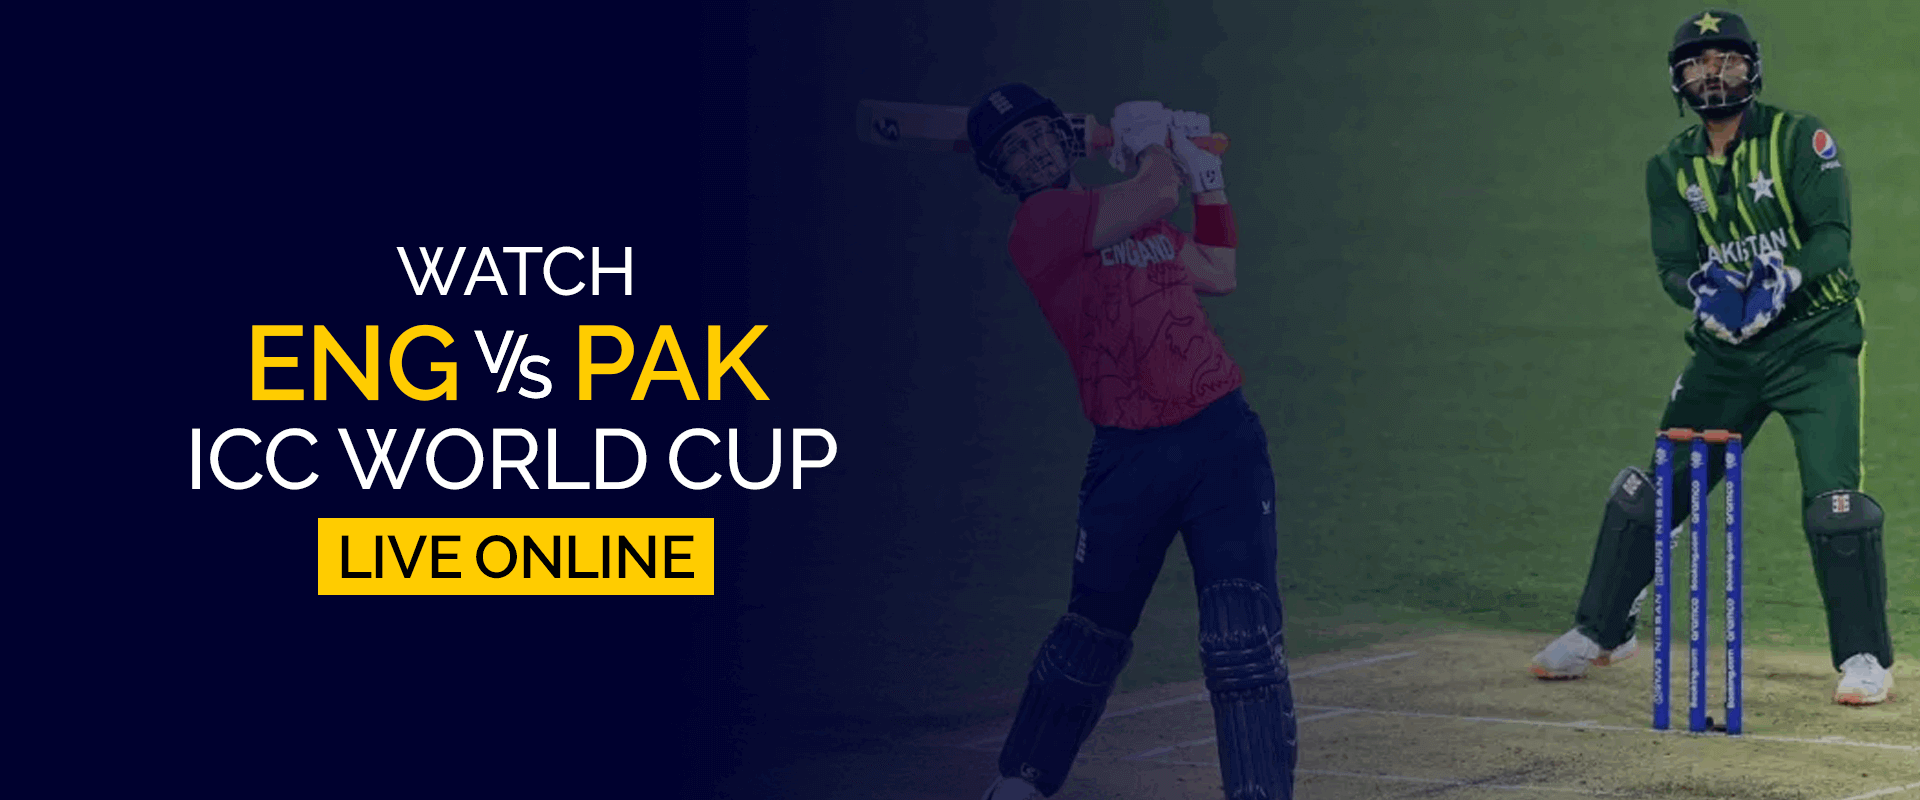 Смотрите матч чемпионата мира ICC между Англией и Пакистаном в прямом эфире онлайн